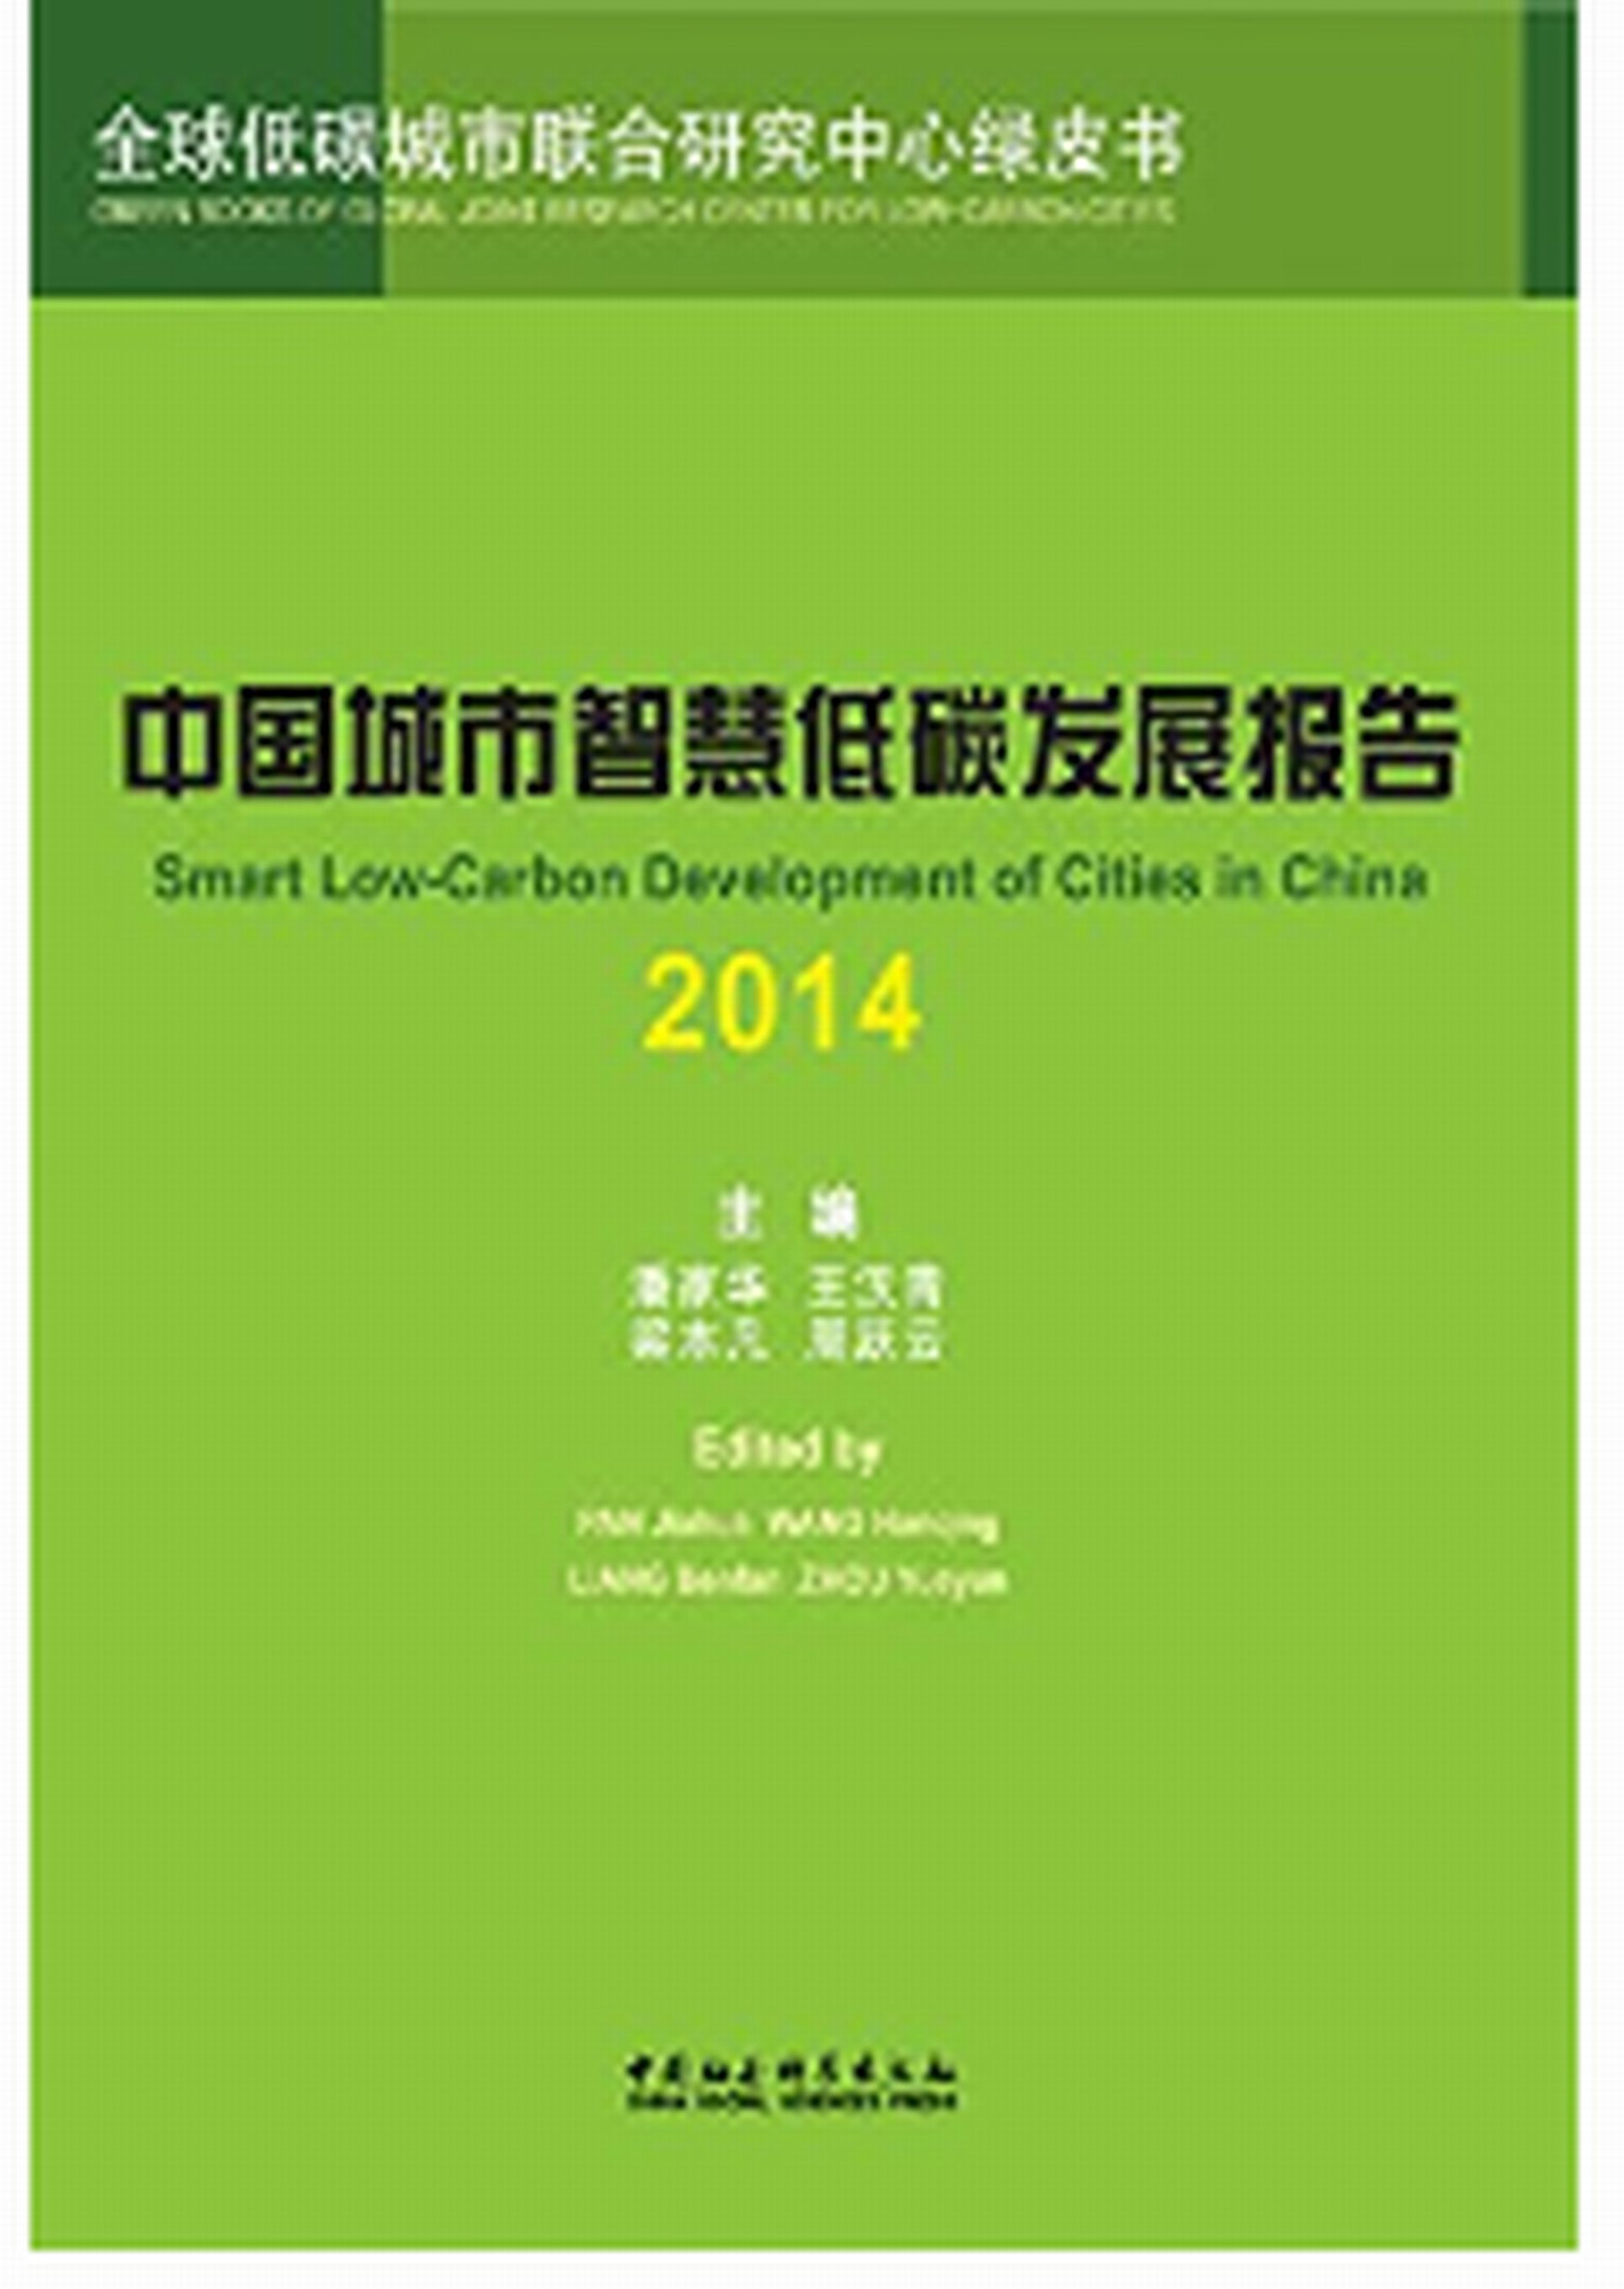 中國城市智慧低碳發展報告(2014)